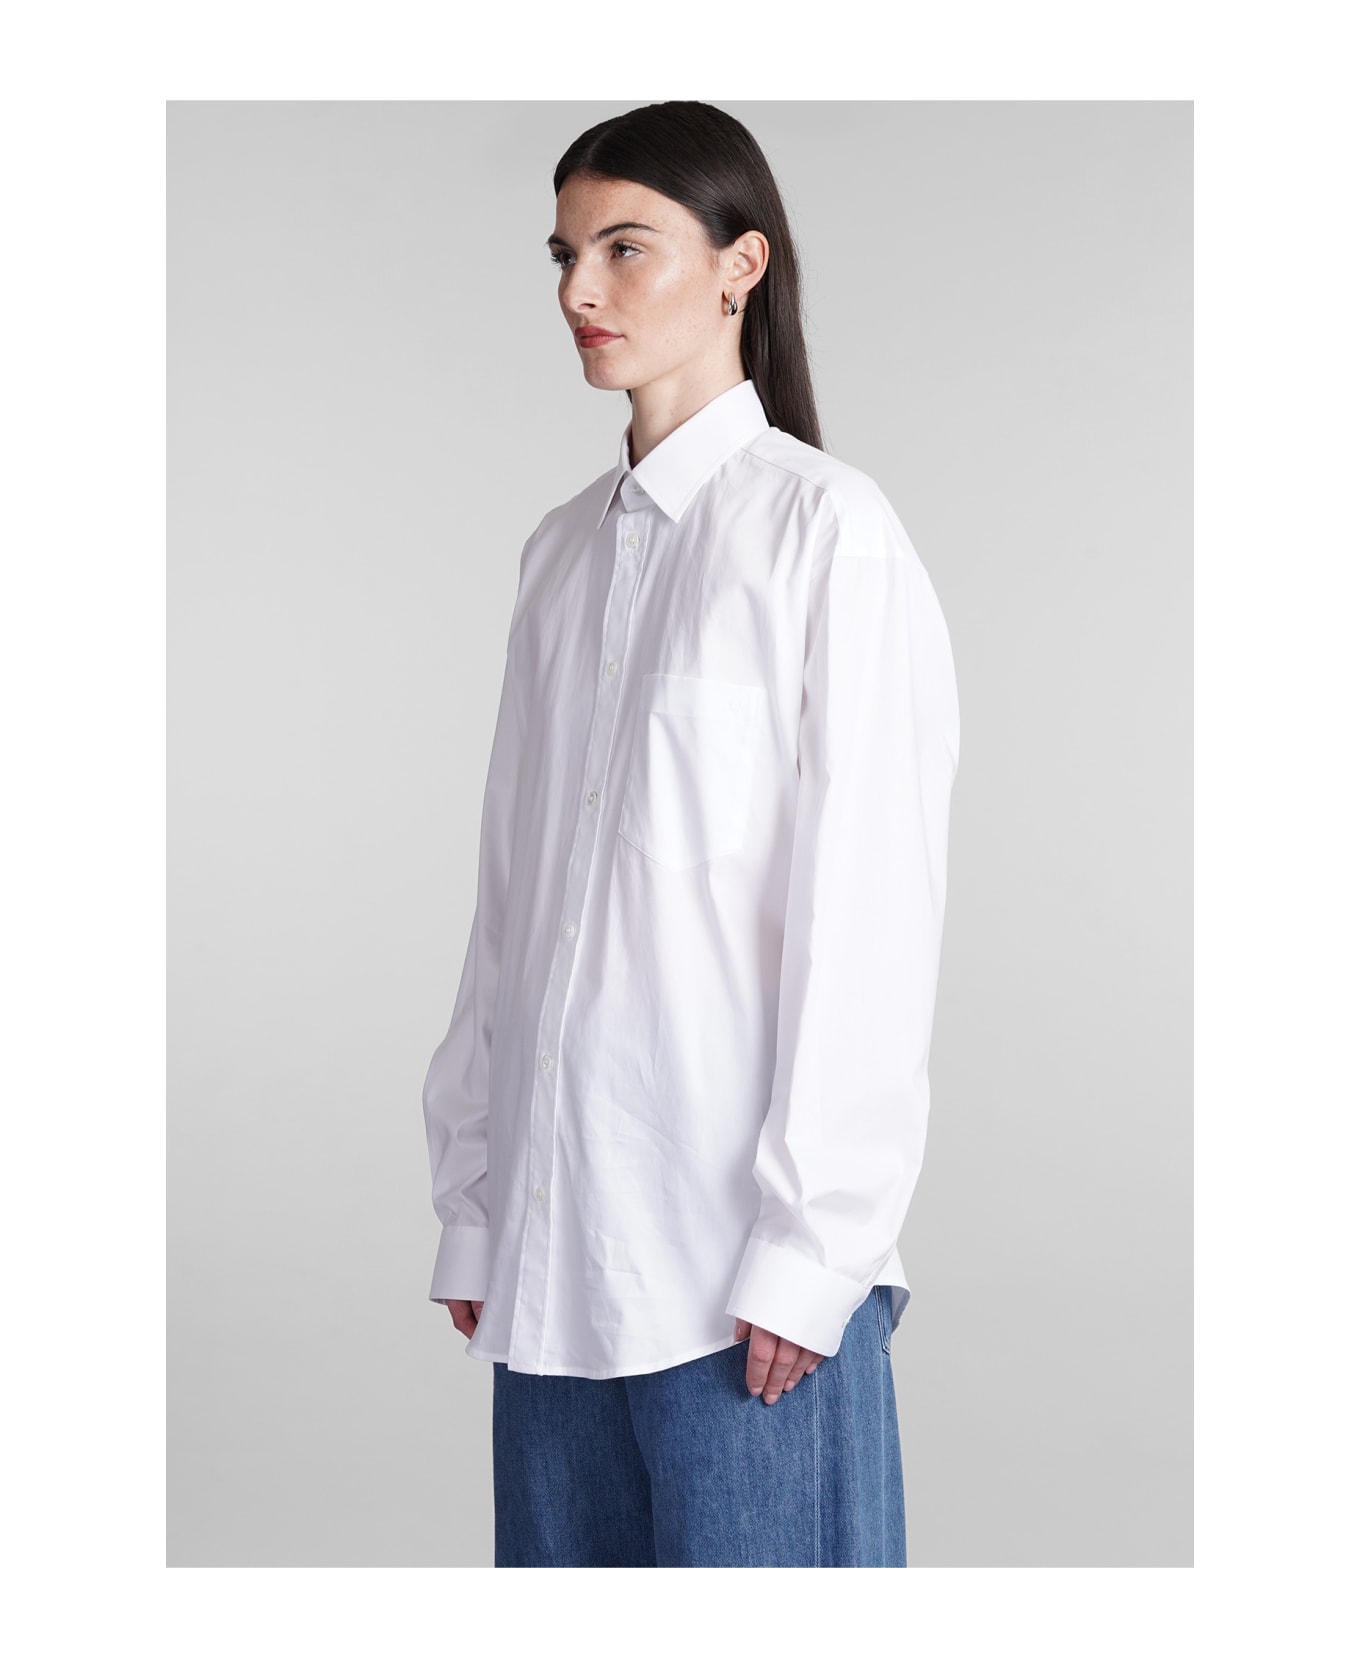 DARKPARK Anne Shirt In White Cotton - white